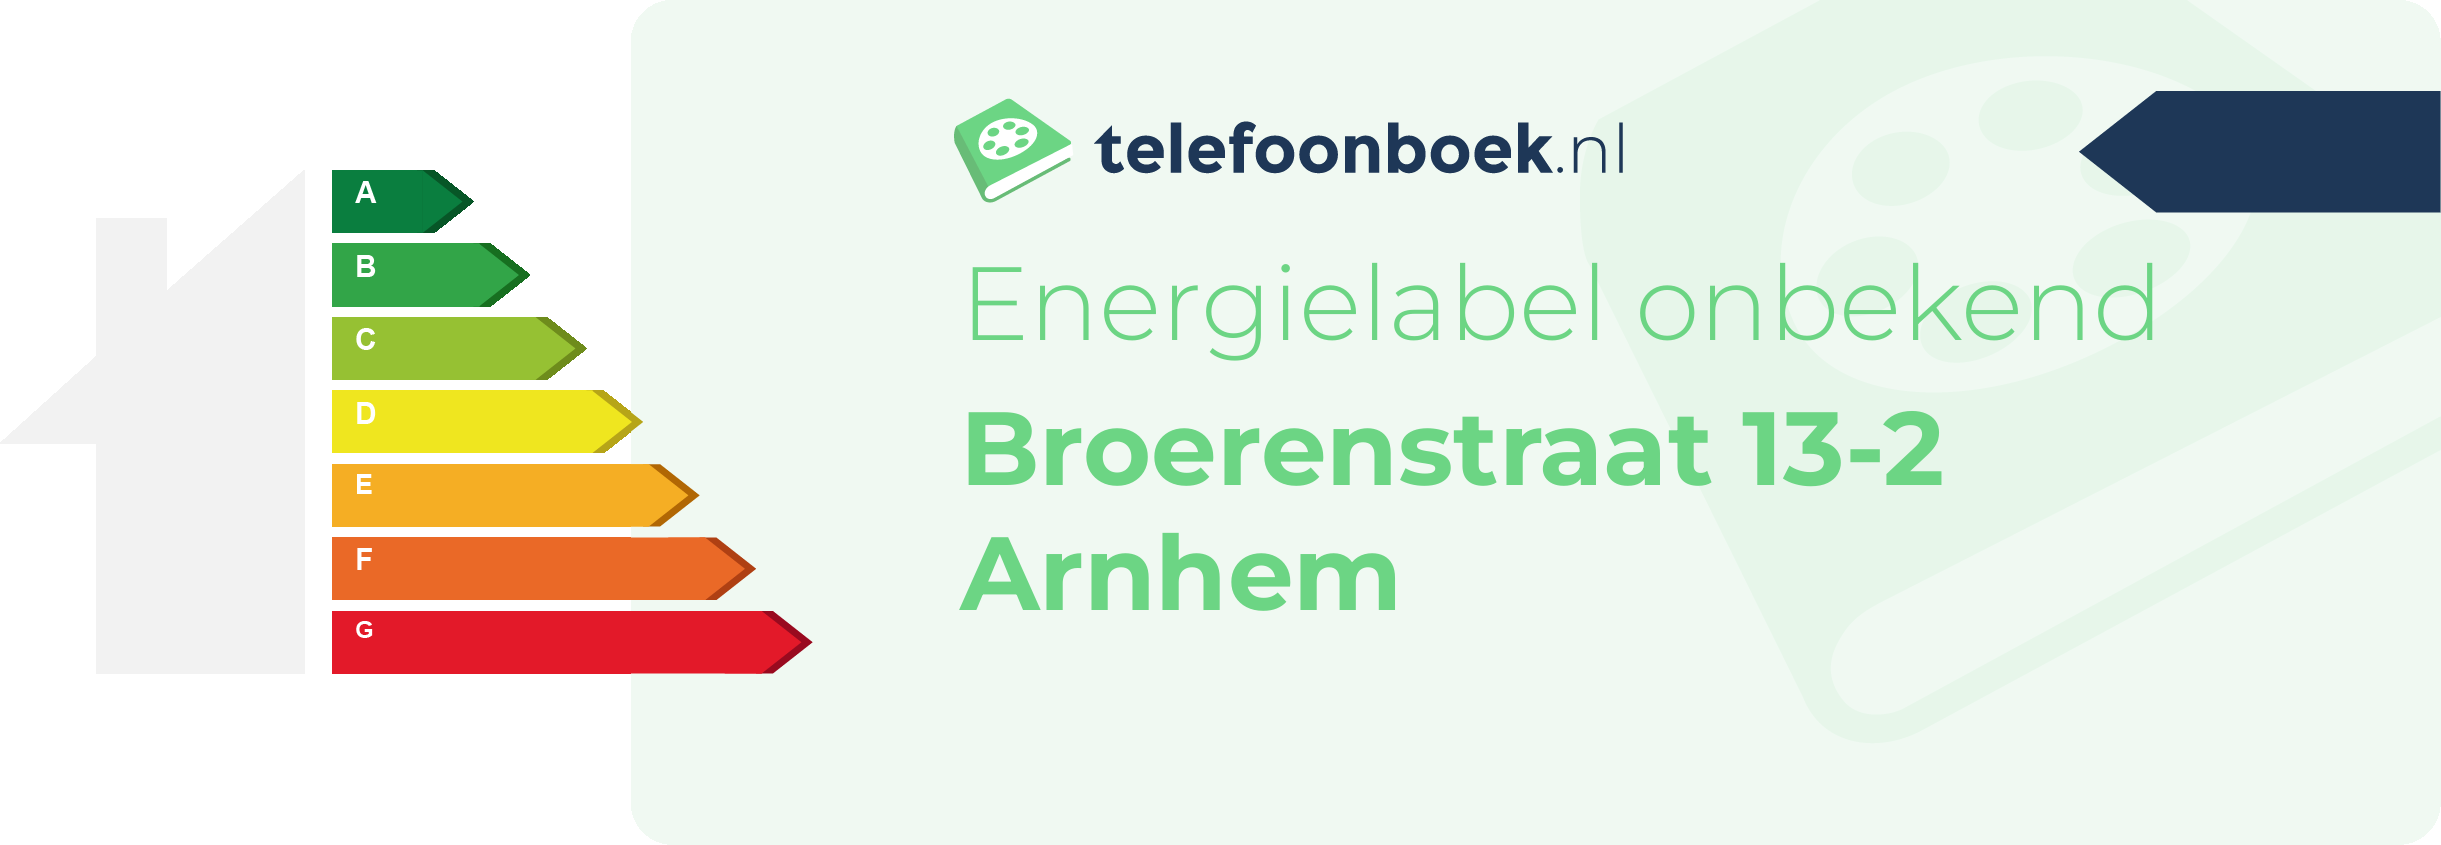 Energielabel Broerenstraat 13-2 Arnhem